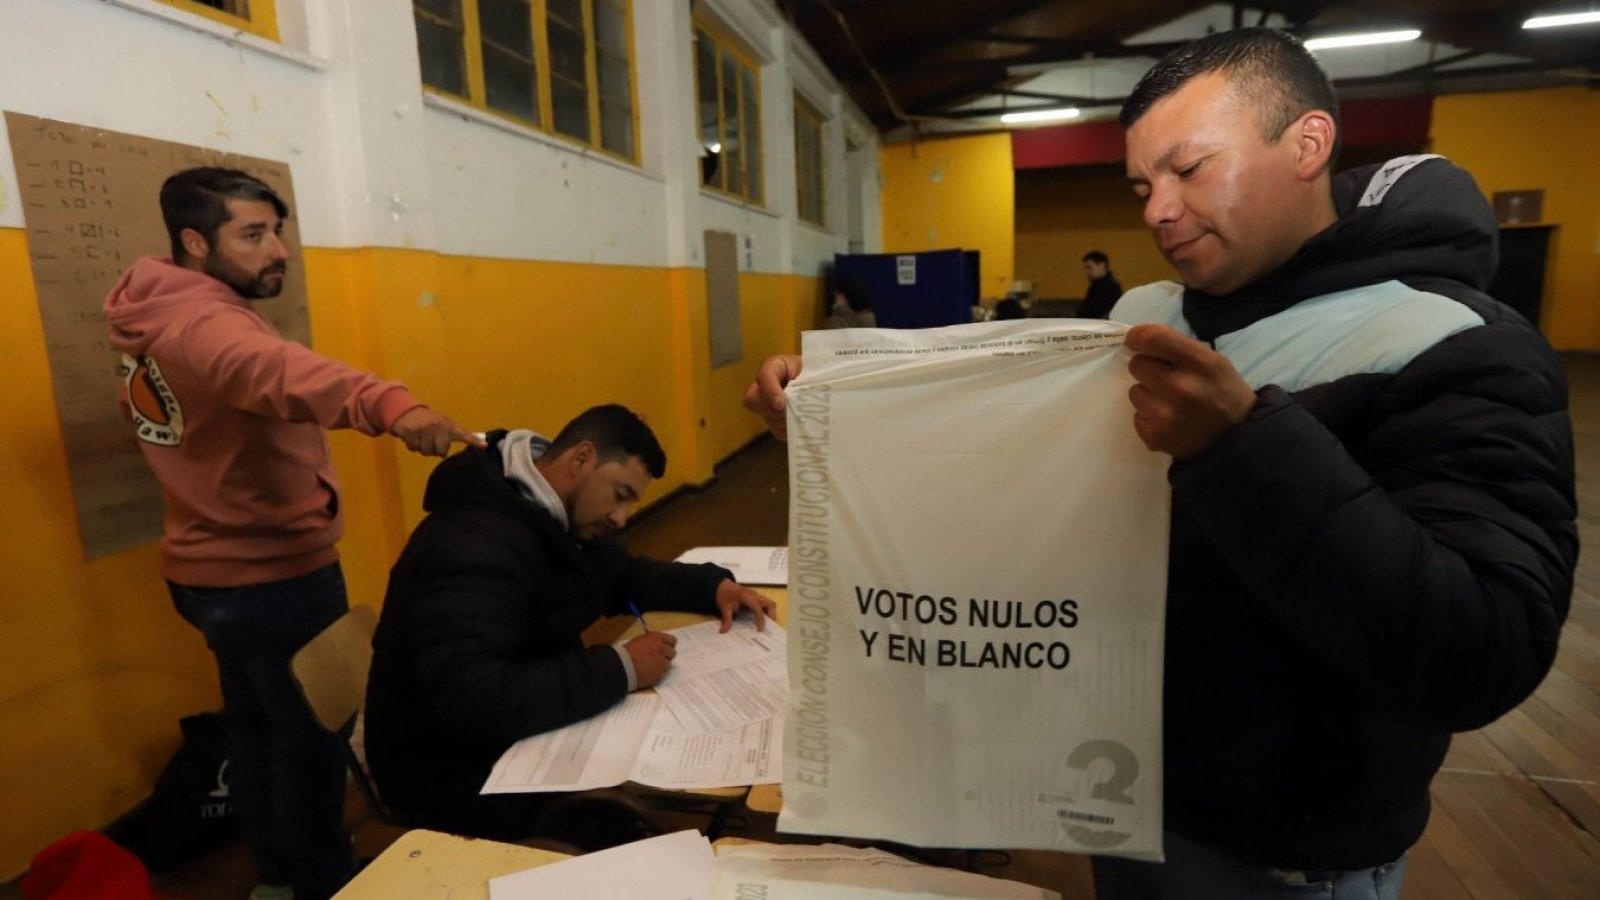 Votos nulos y blancos siendo guardados al interior de una bolsa.